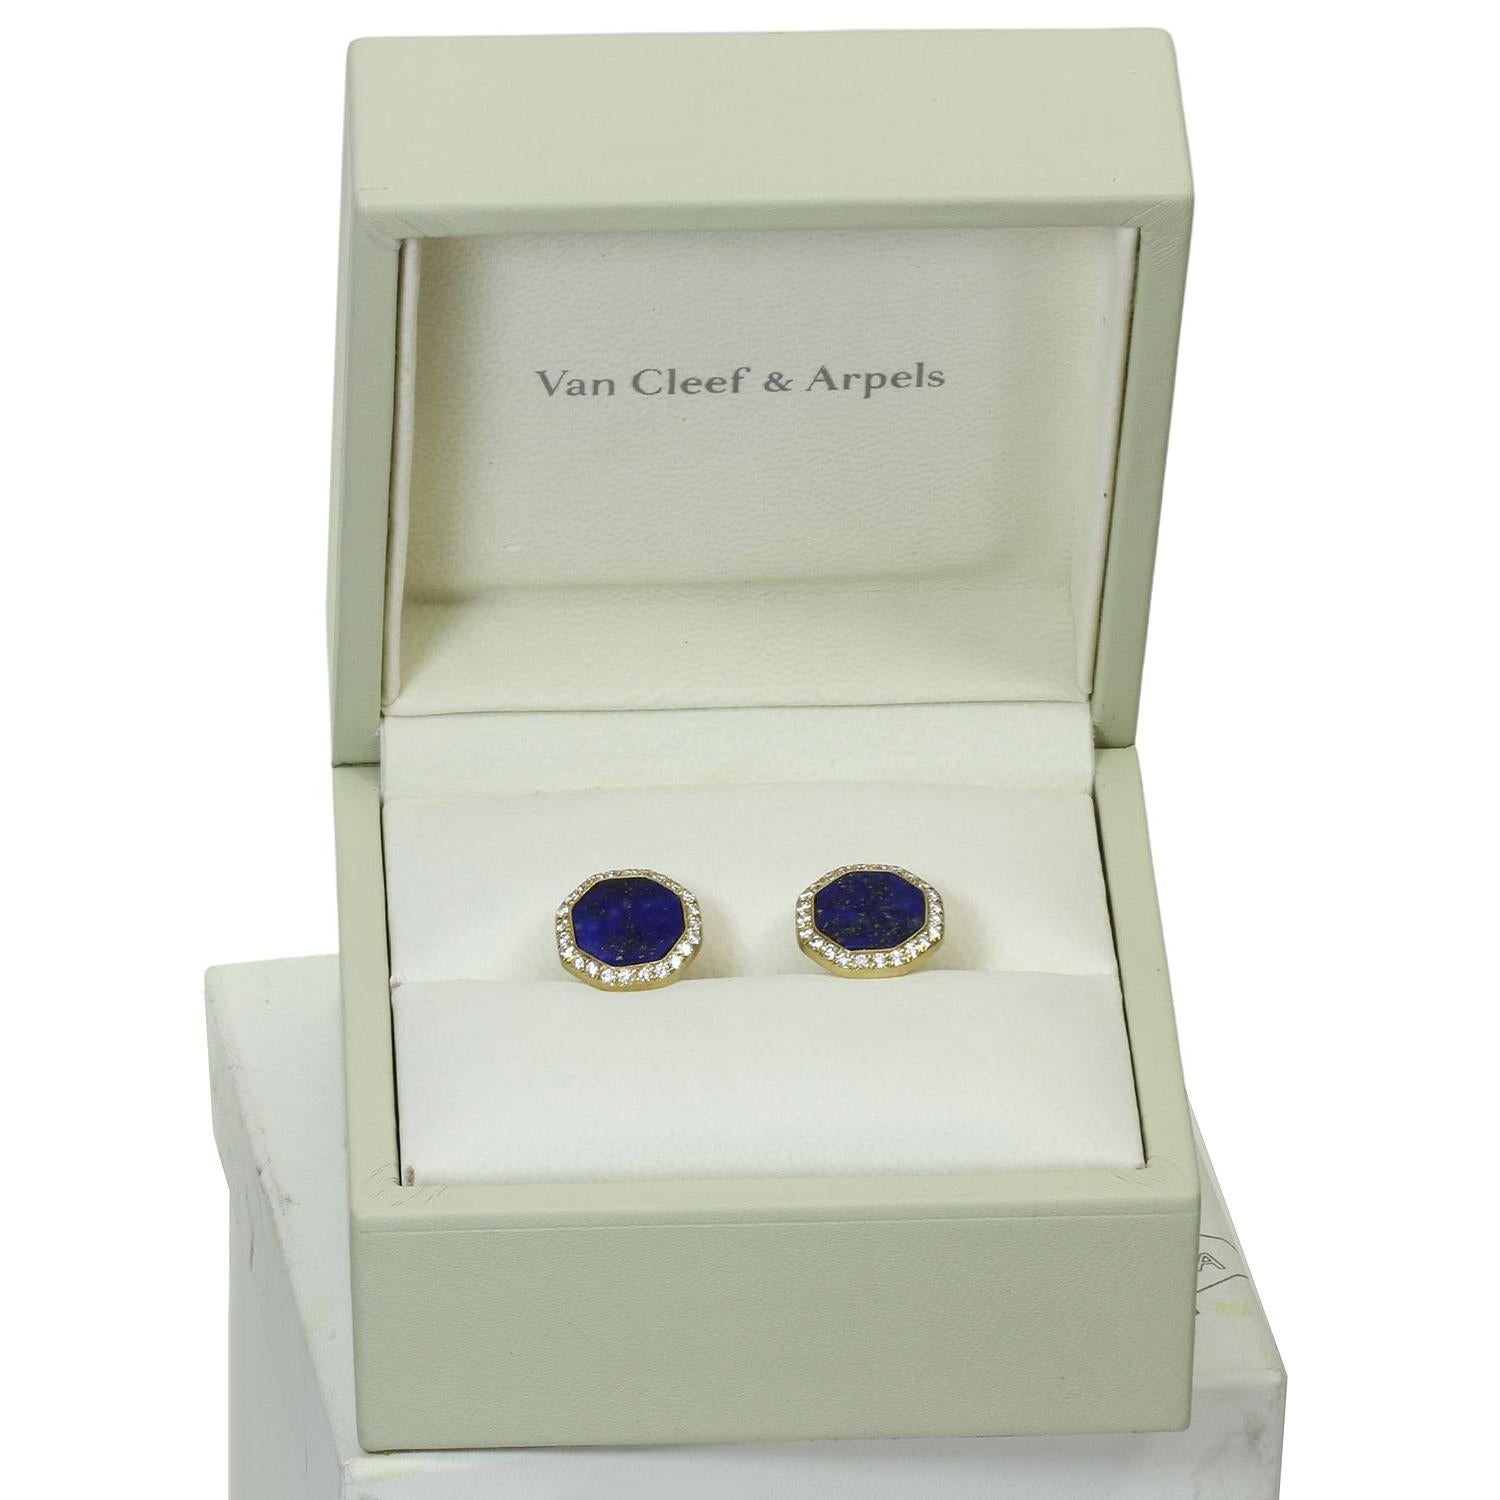 Taille brillant VAN CLEEF & ARPELS Boutons de manchette en or jaune 18 carats, diamants et lapis-lazuli 